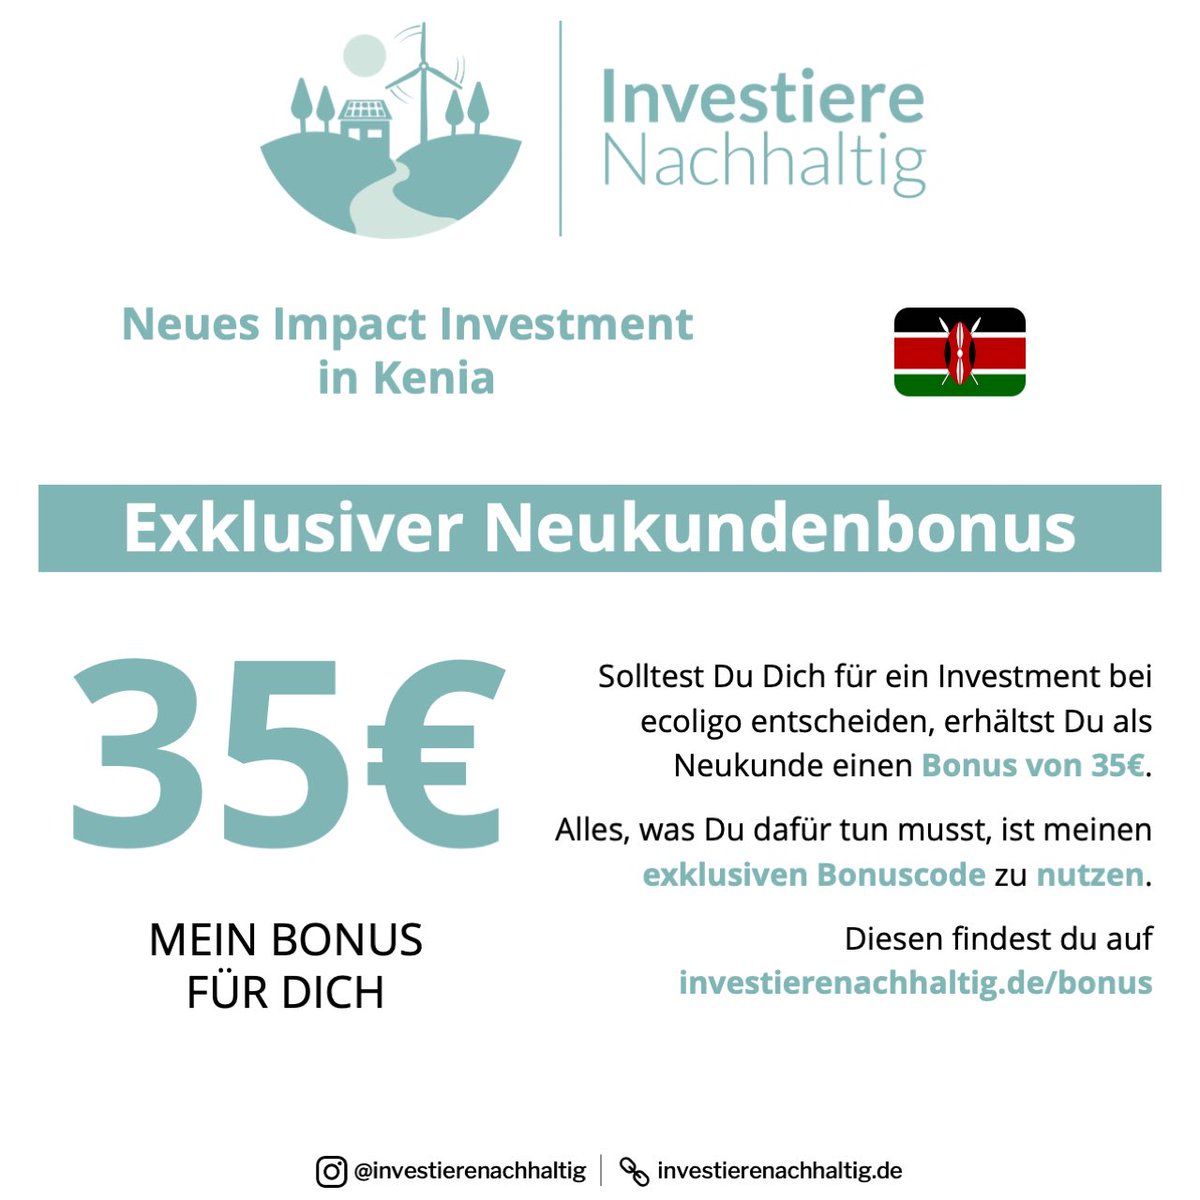 An der Finanzierung lässt sich bereits ab €100 teilnehmen. Mit unserem Bonuscode erhalten Erstanleger zudem €35 Cashback. (3/3)

ecoligo.investments/projekte/toror…

#crowd #crowdfunding #crowdinvesting #pv #solar #kenya #tea #ecoligo #cashback